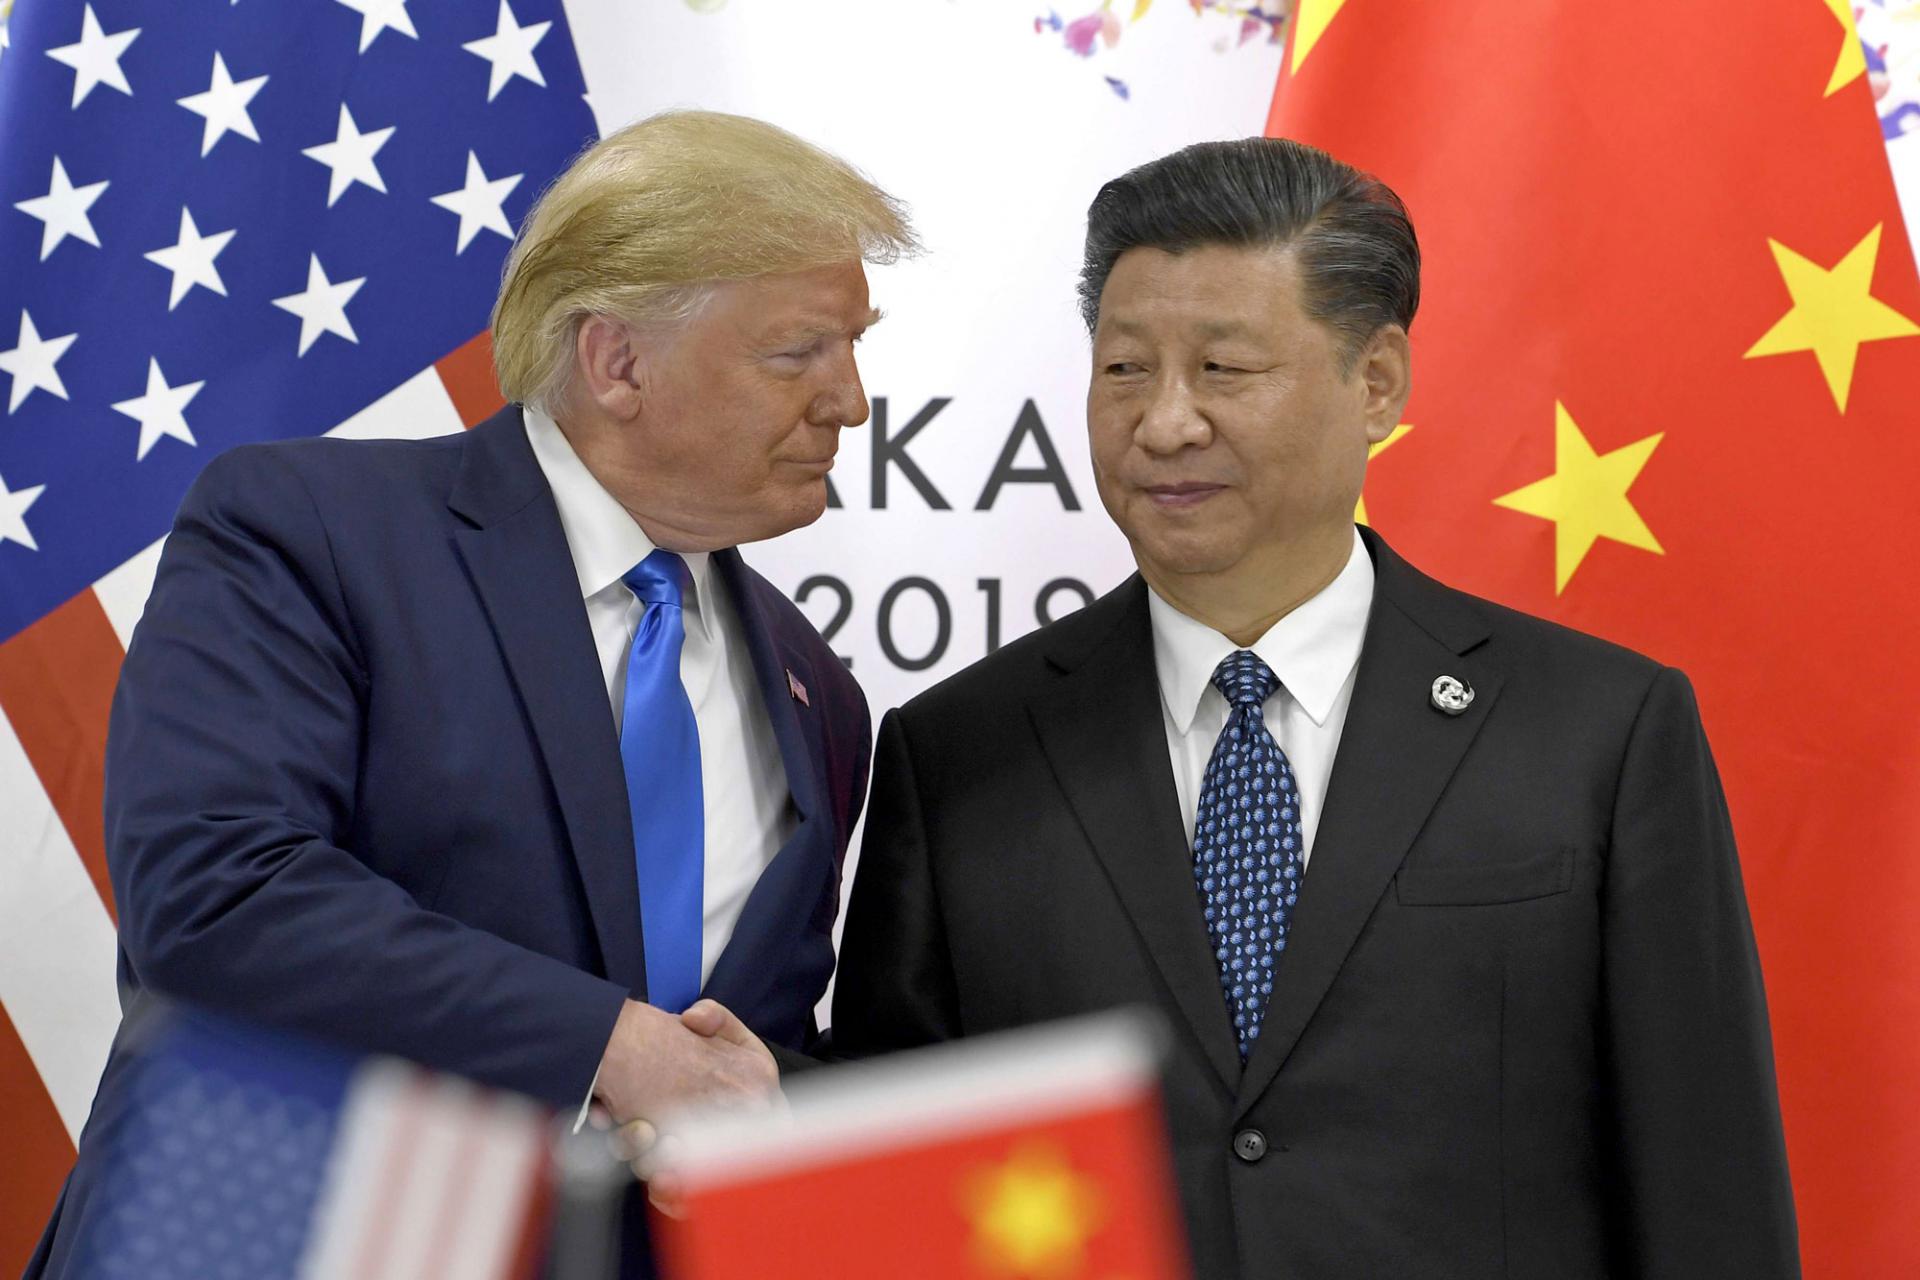 الرئيسان الأميركي والصيني